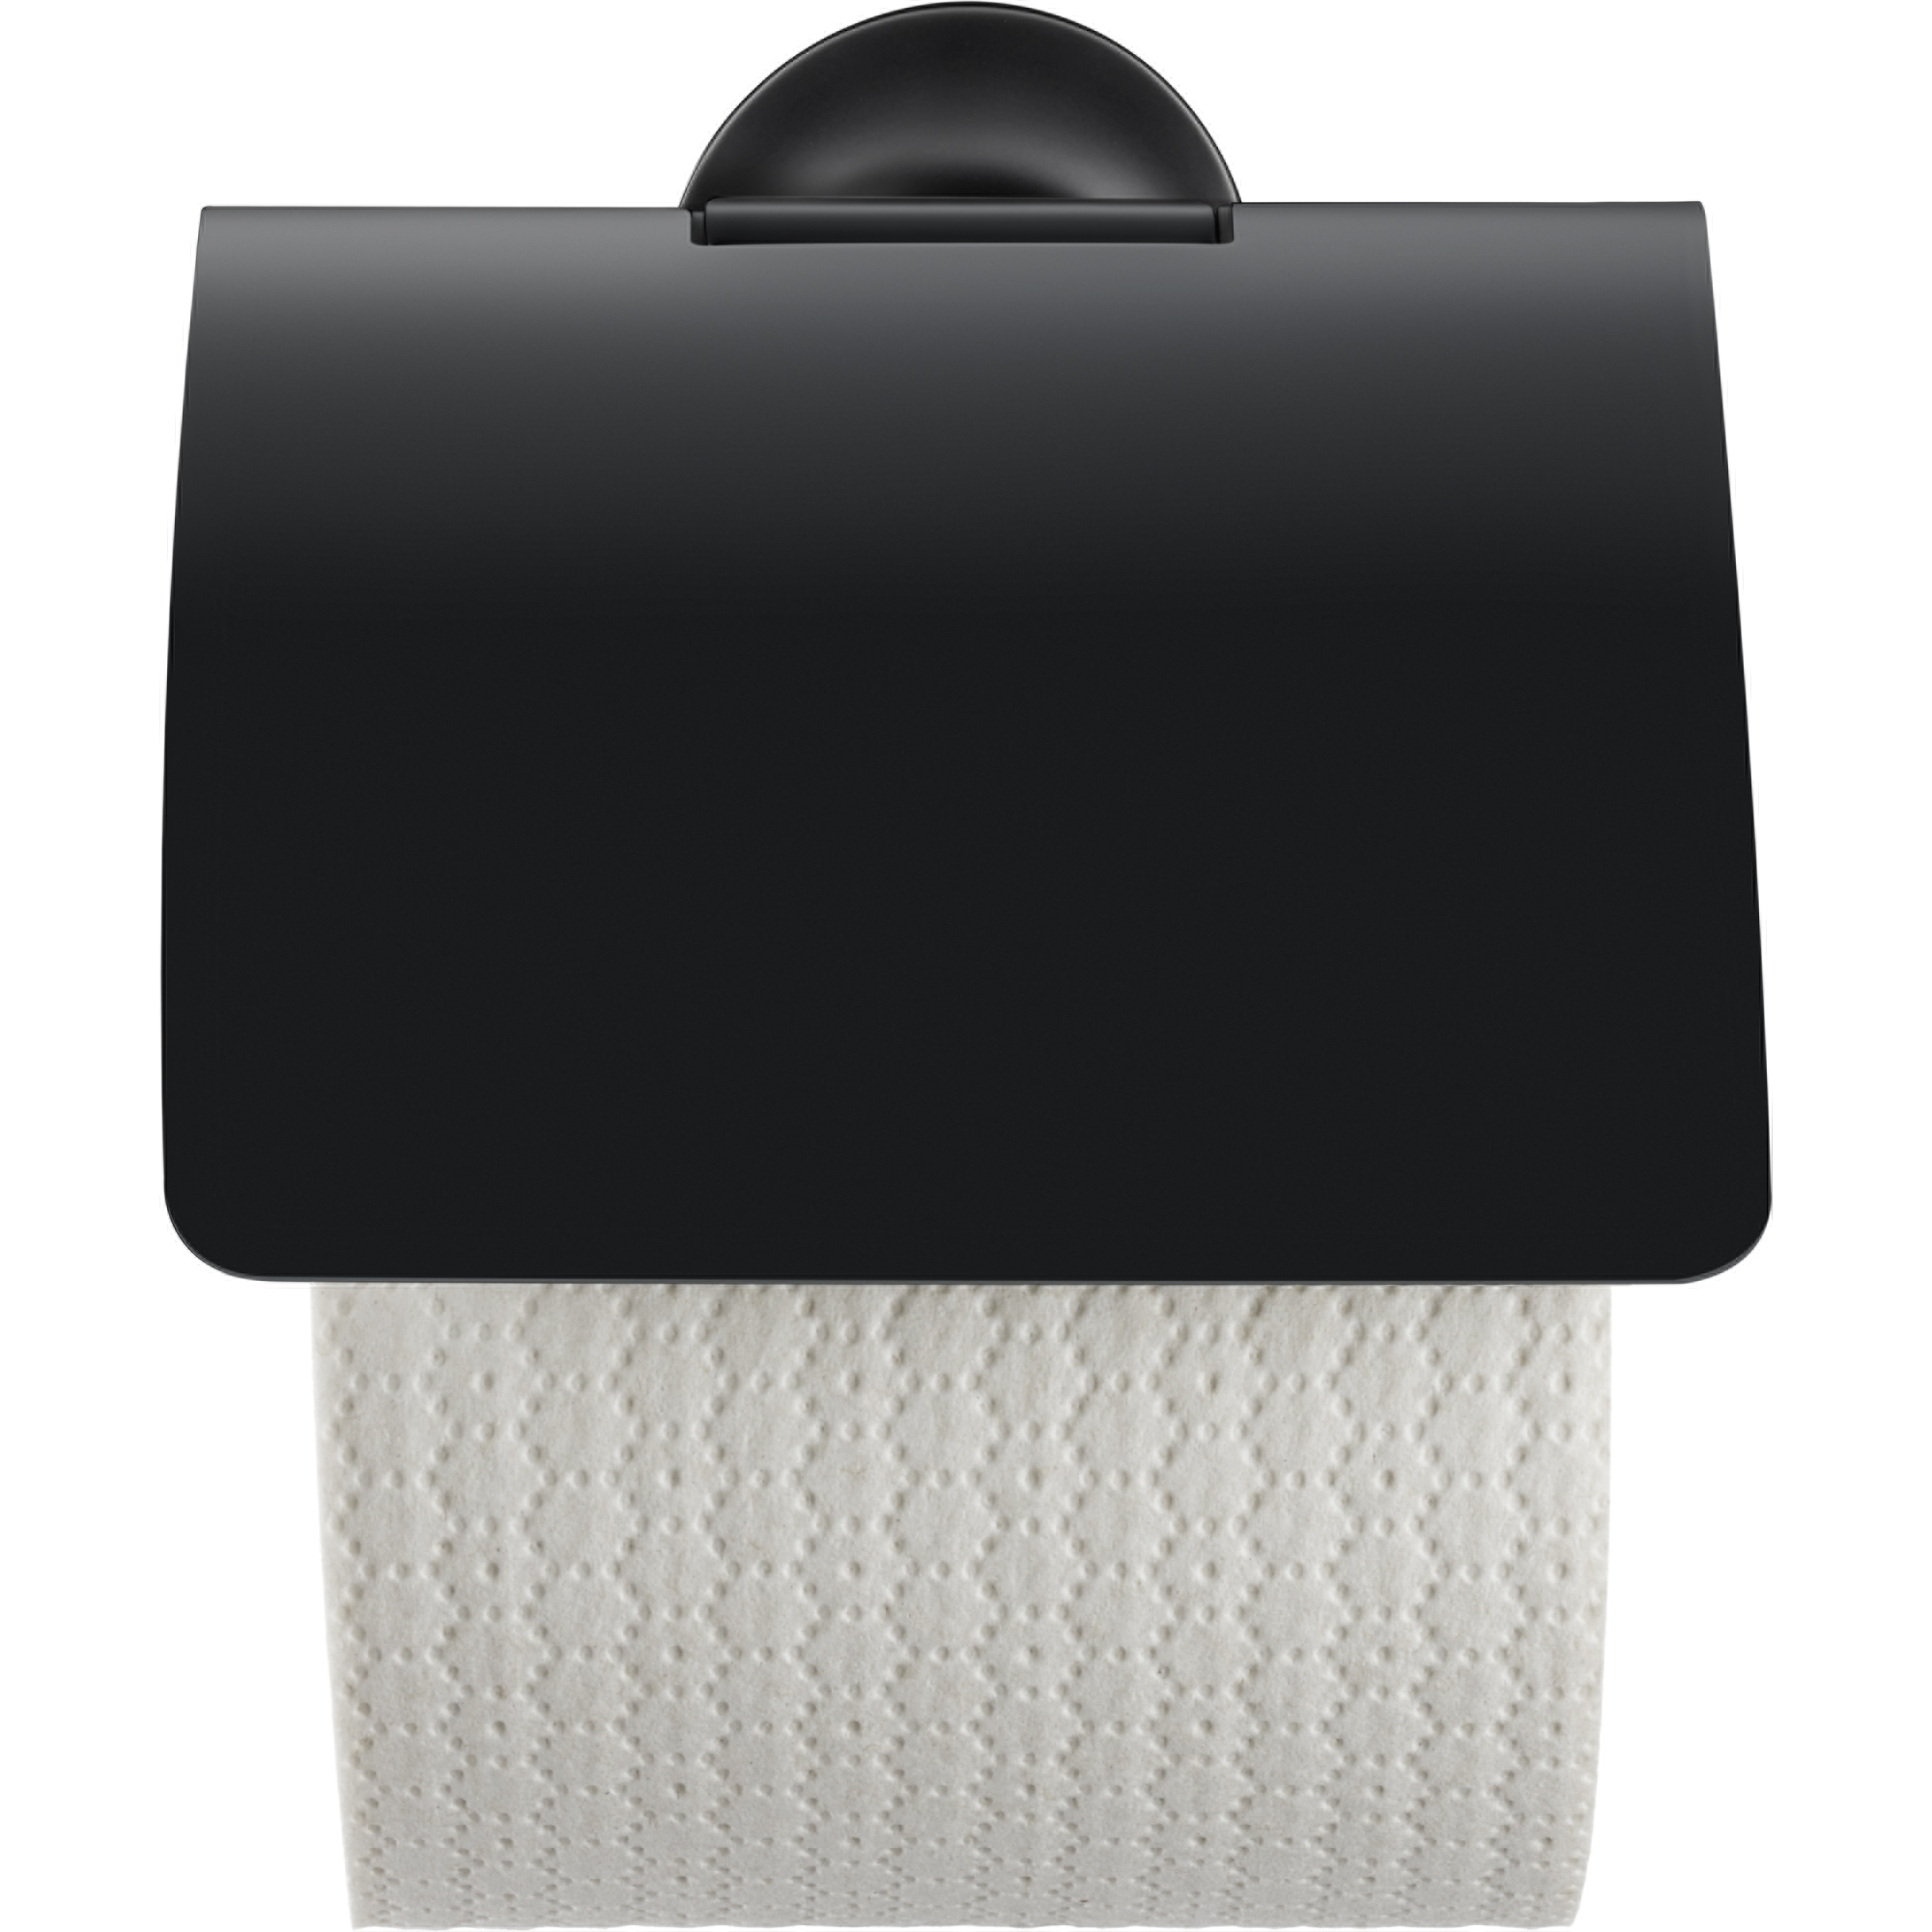 WC-Rollenhalter 'Starck T' mit Deckel 12,5 x 13,1 x 8,3 cm schwarz matt + product picture